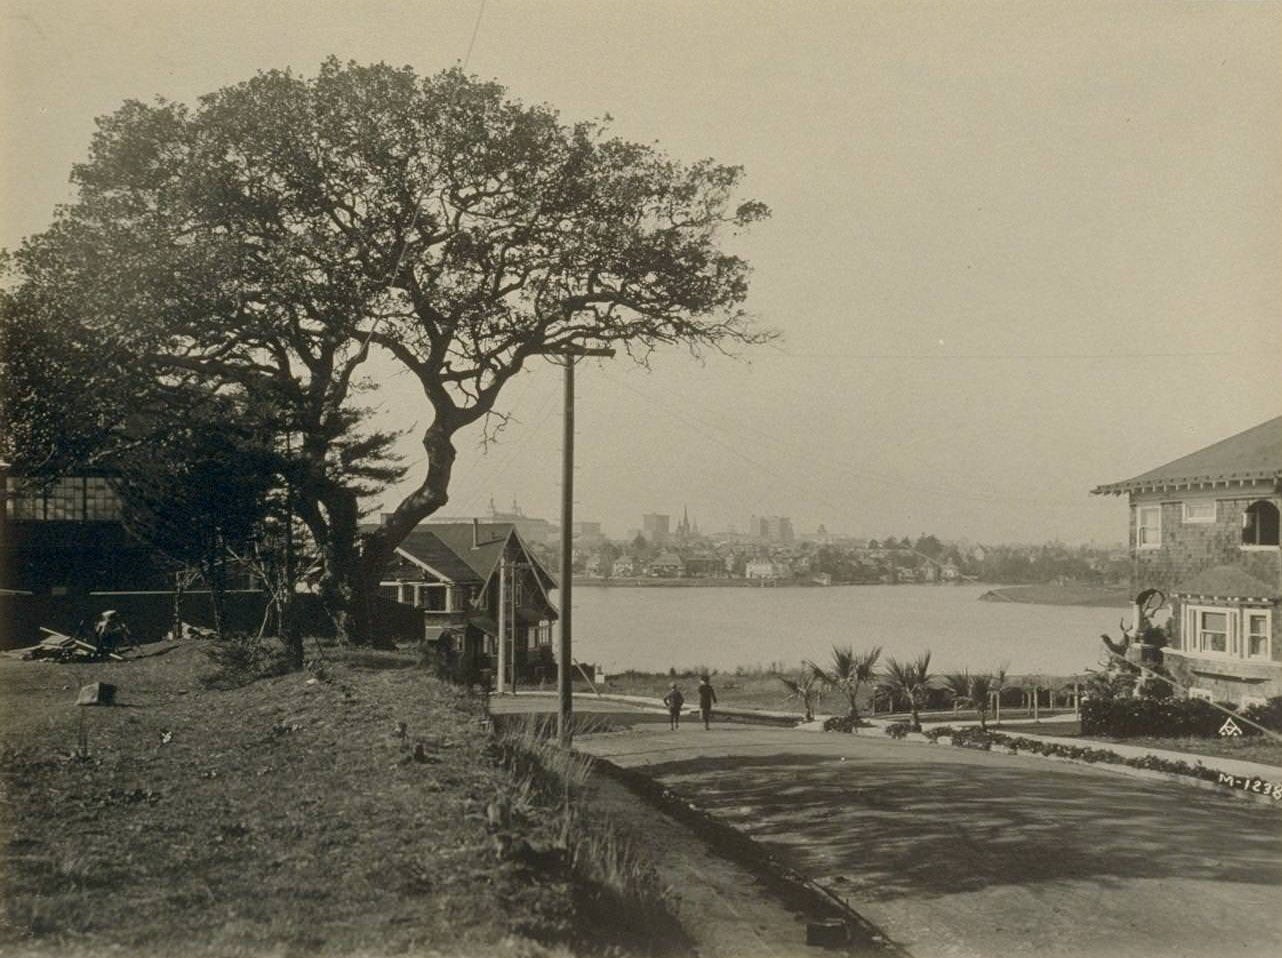 Lake Merritt, Oakland, 1930s